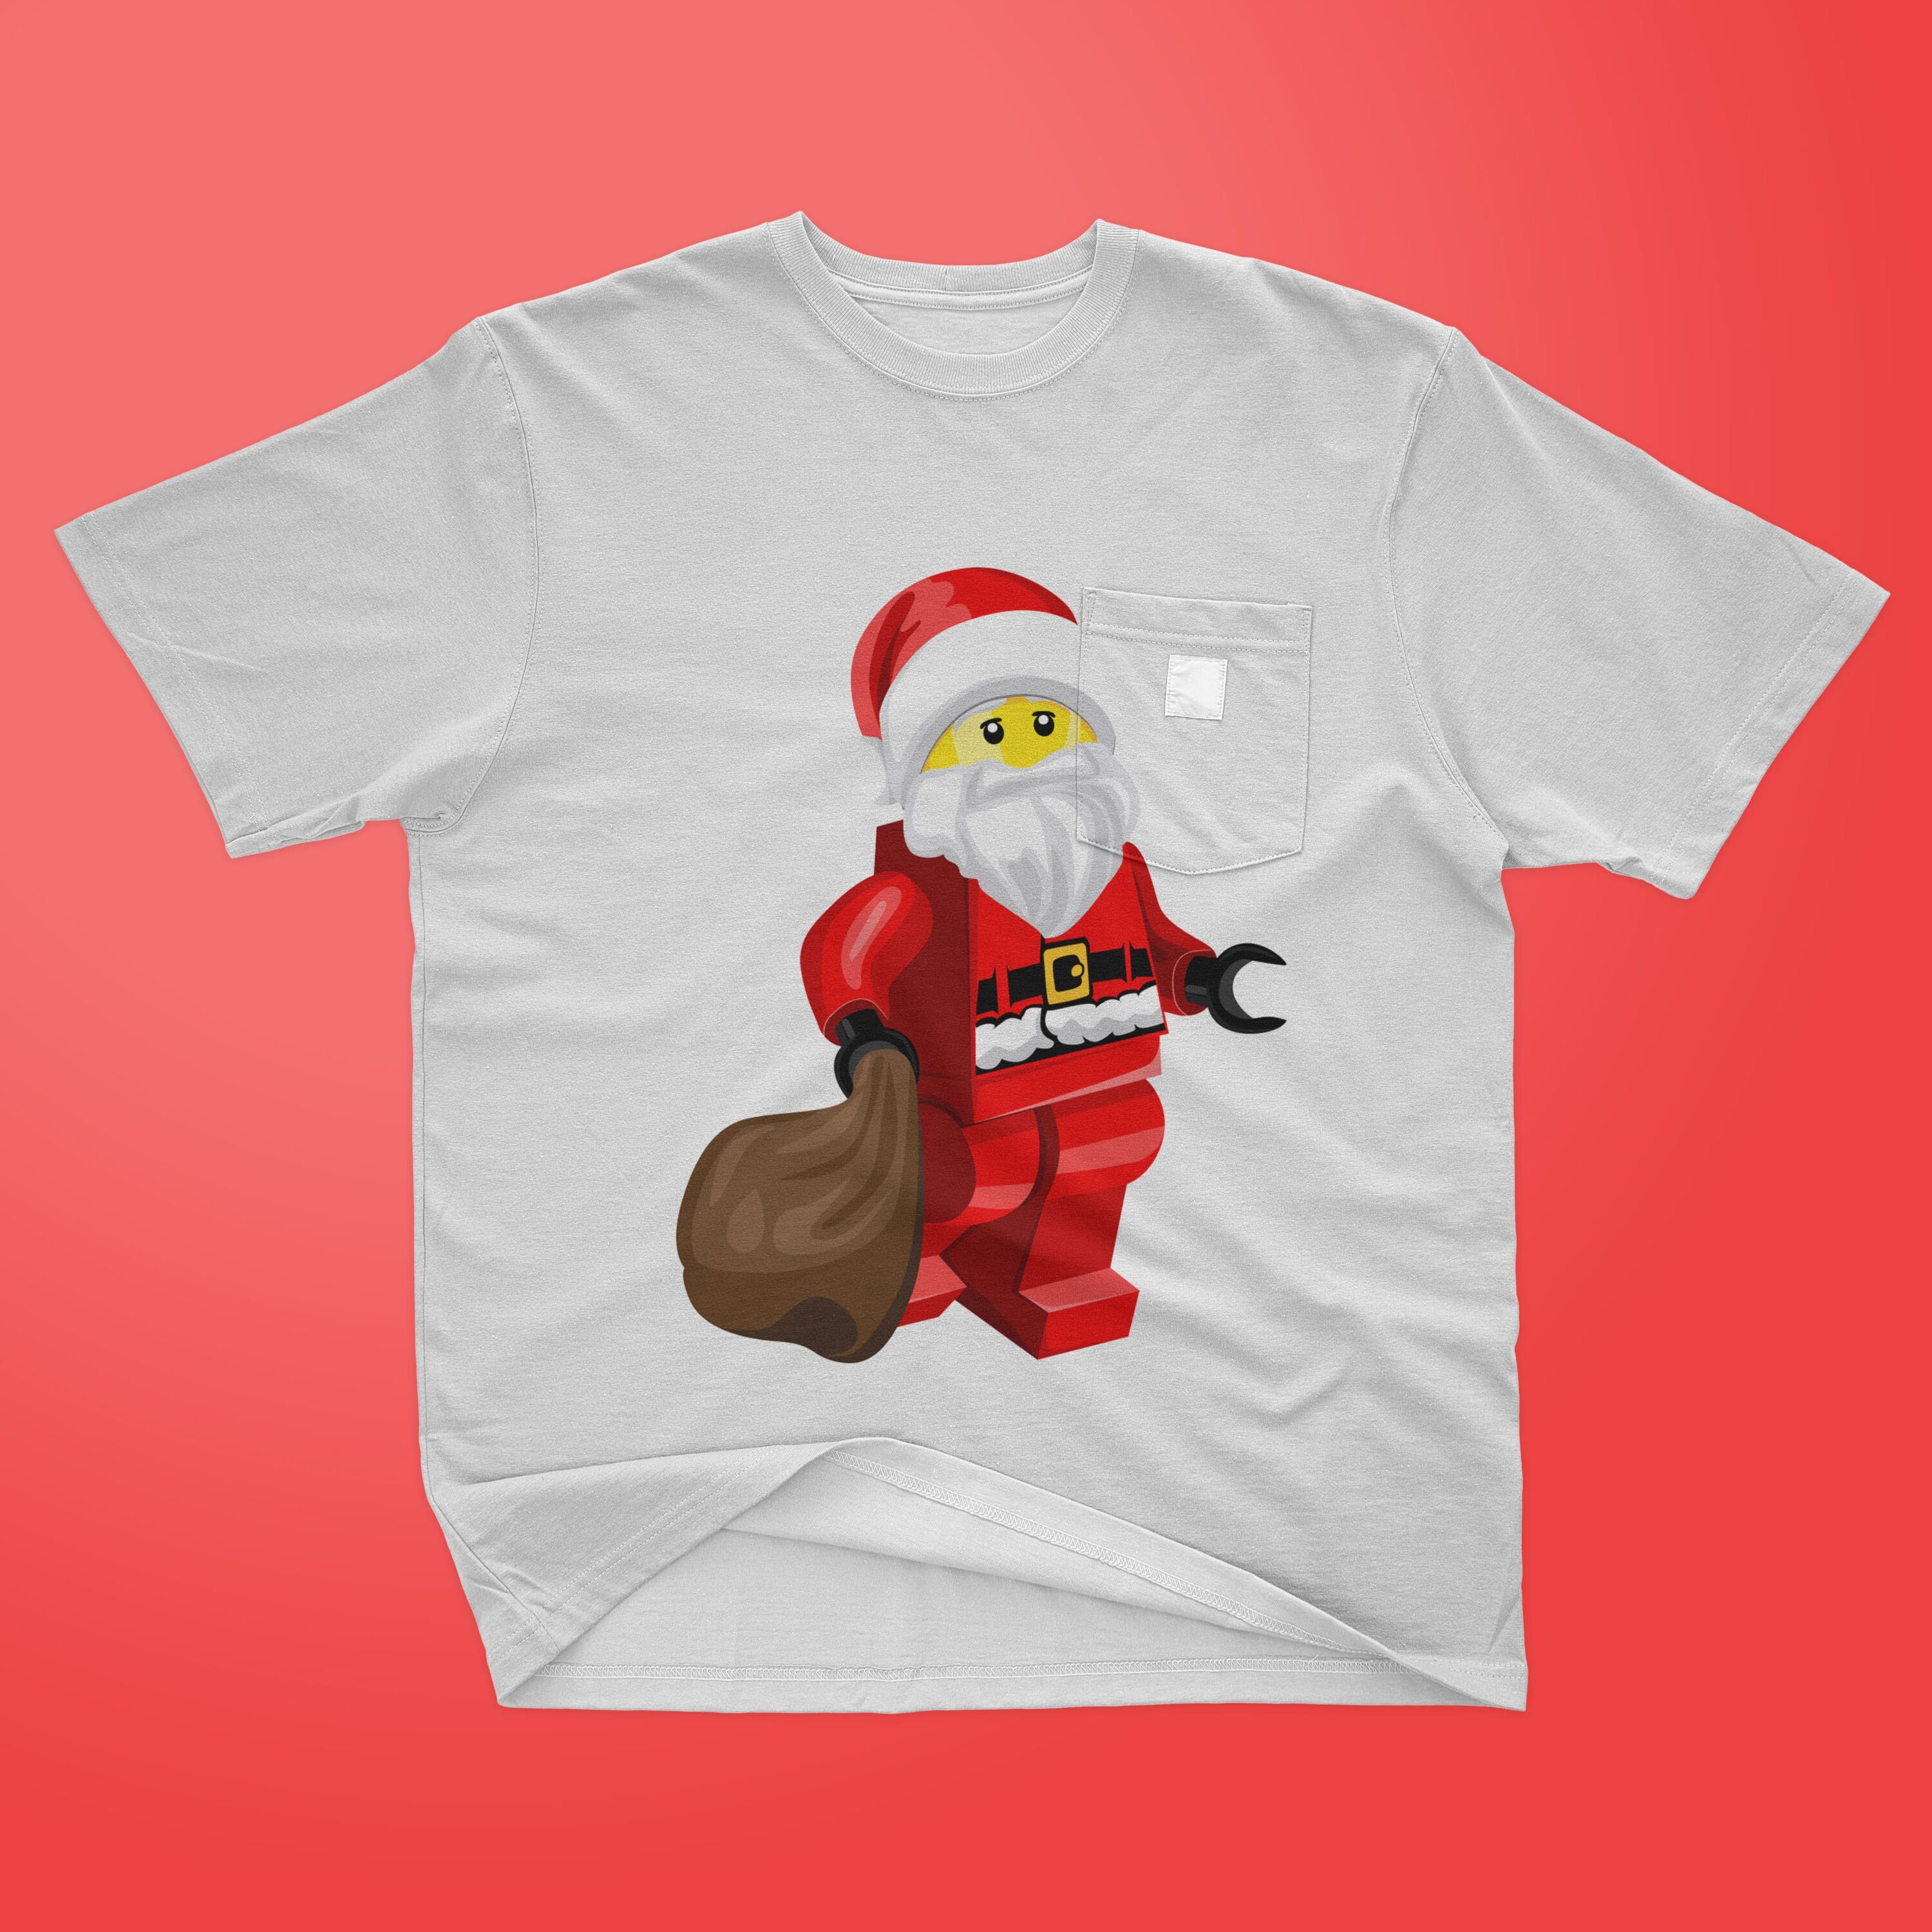 Lego christmas Santa printed on the t-shirt.